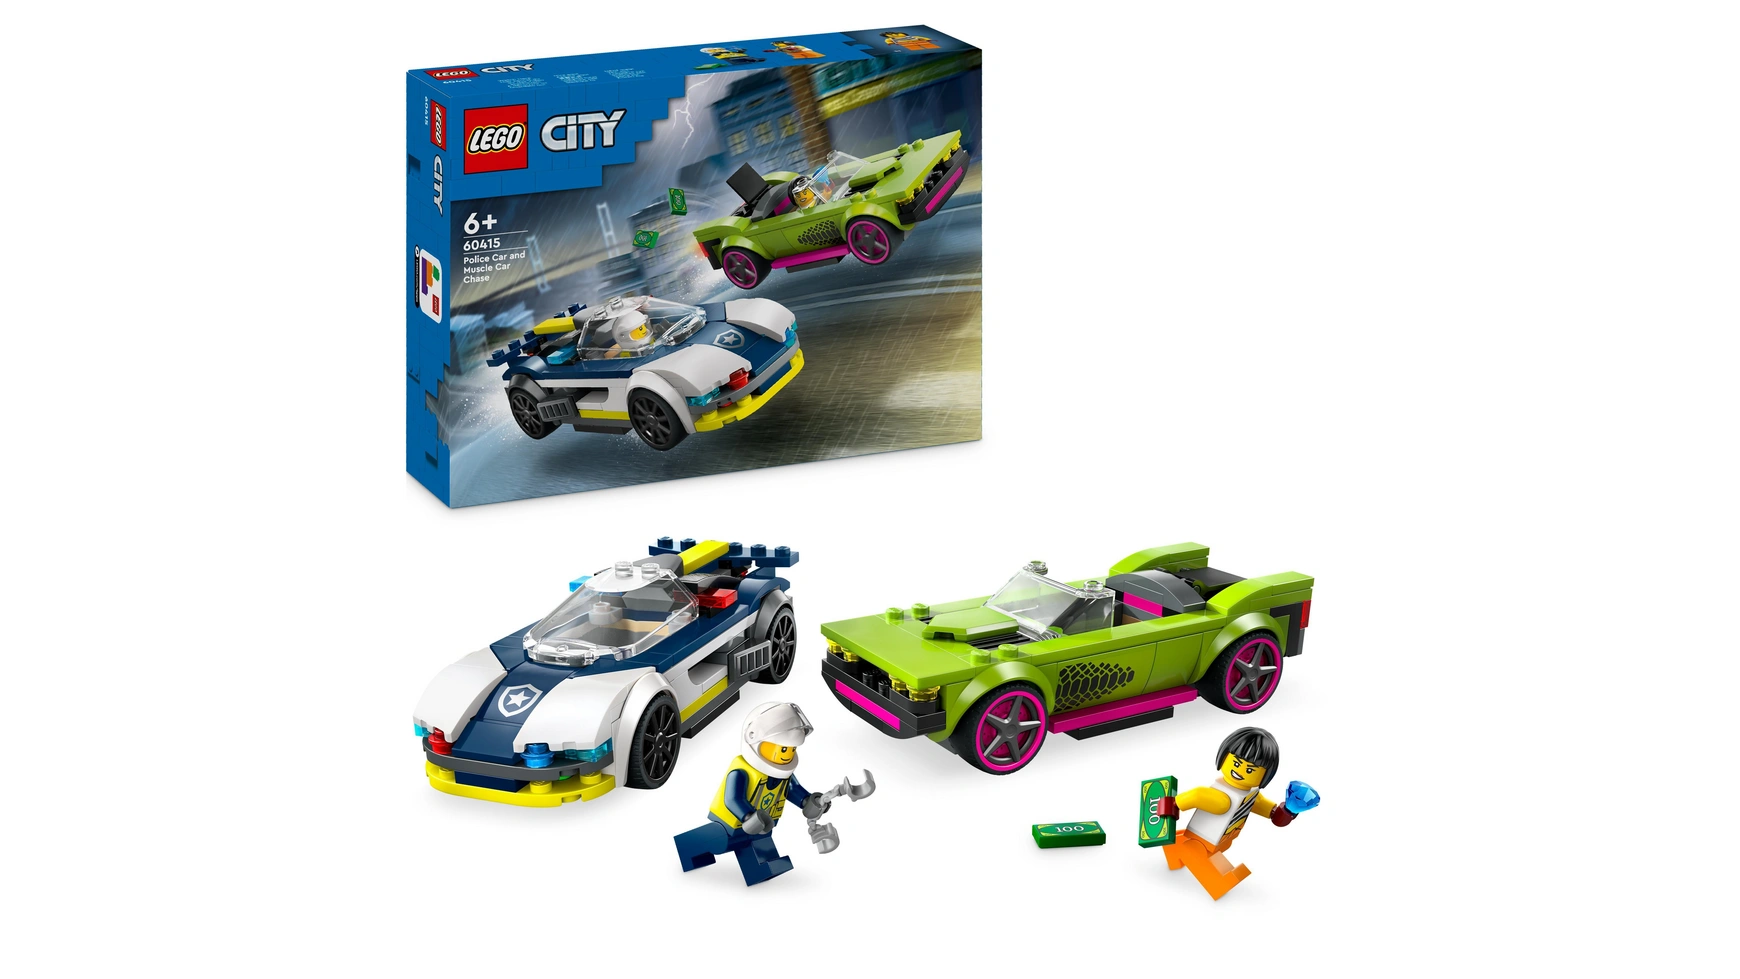 Lego City Погоня на полицейской машине и игрушечный автомобиль с мускулистыми машинами lego city racing car игрушечный гоночный автомобиль для детей от 4 лет и старше